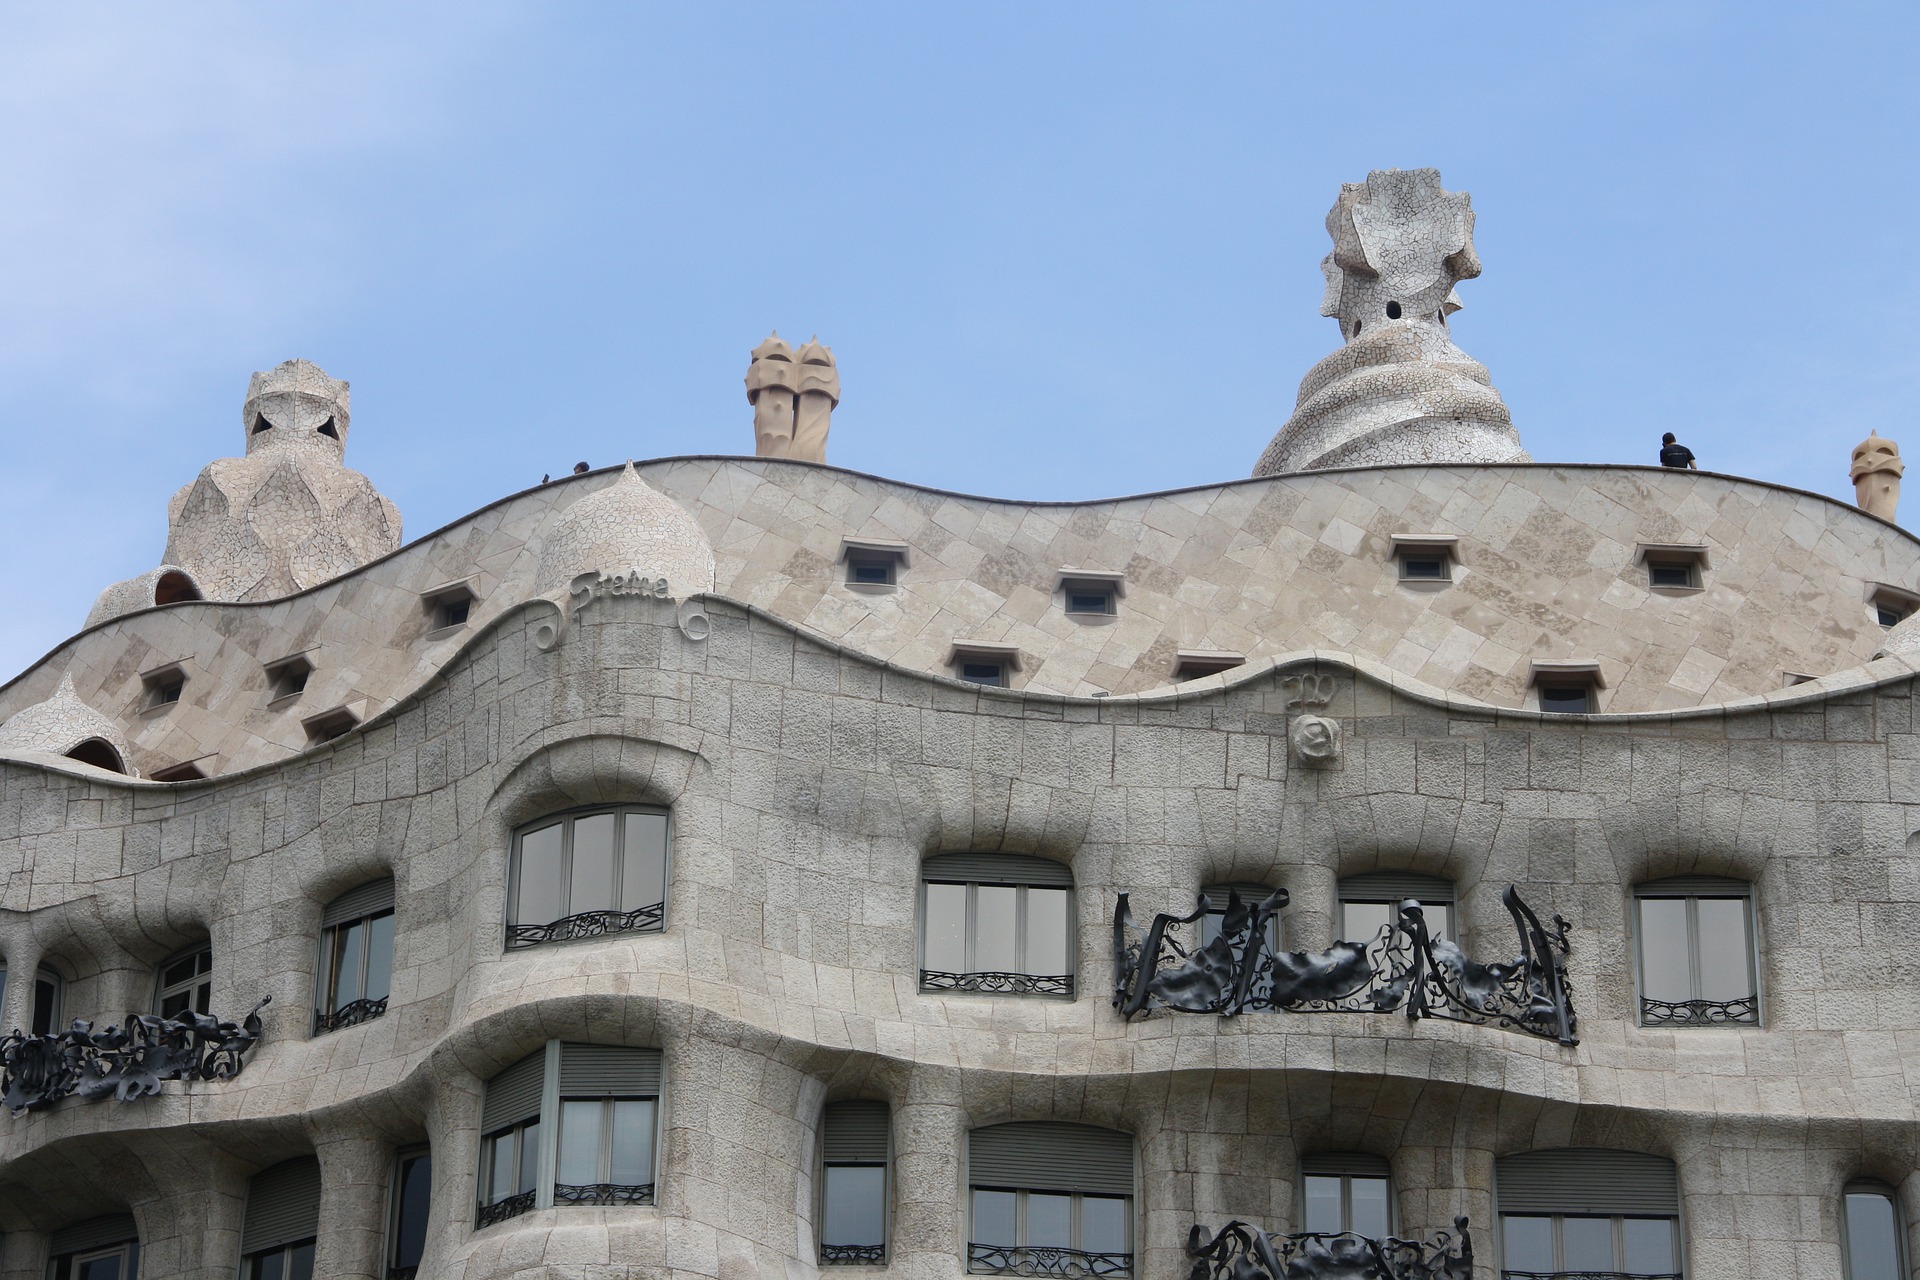 La Pedrera - Casa Milà Antoni Gaudí